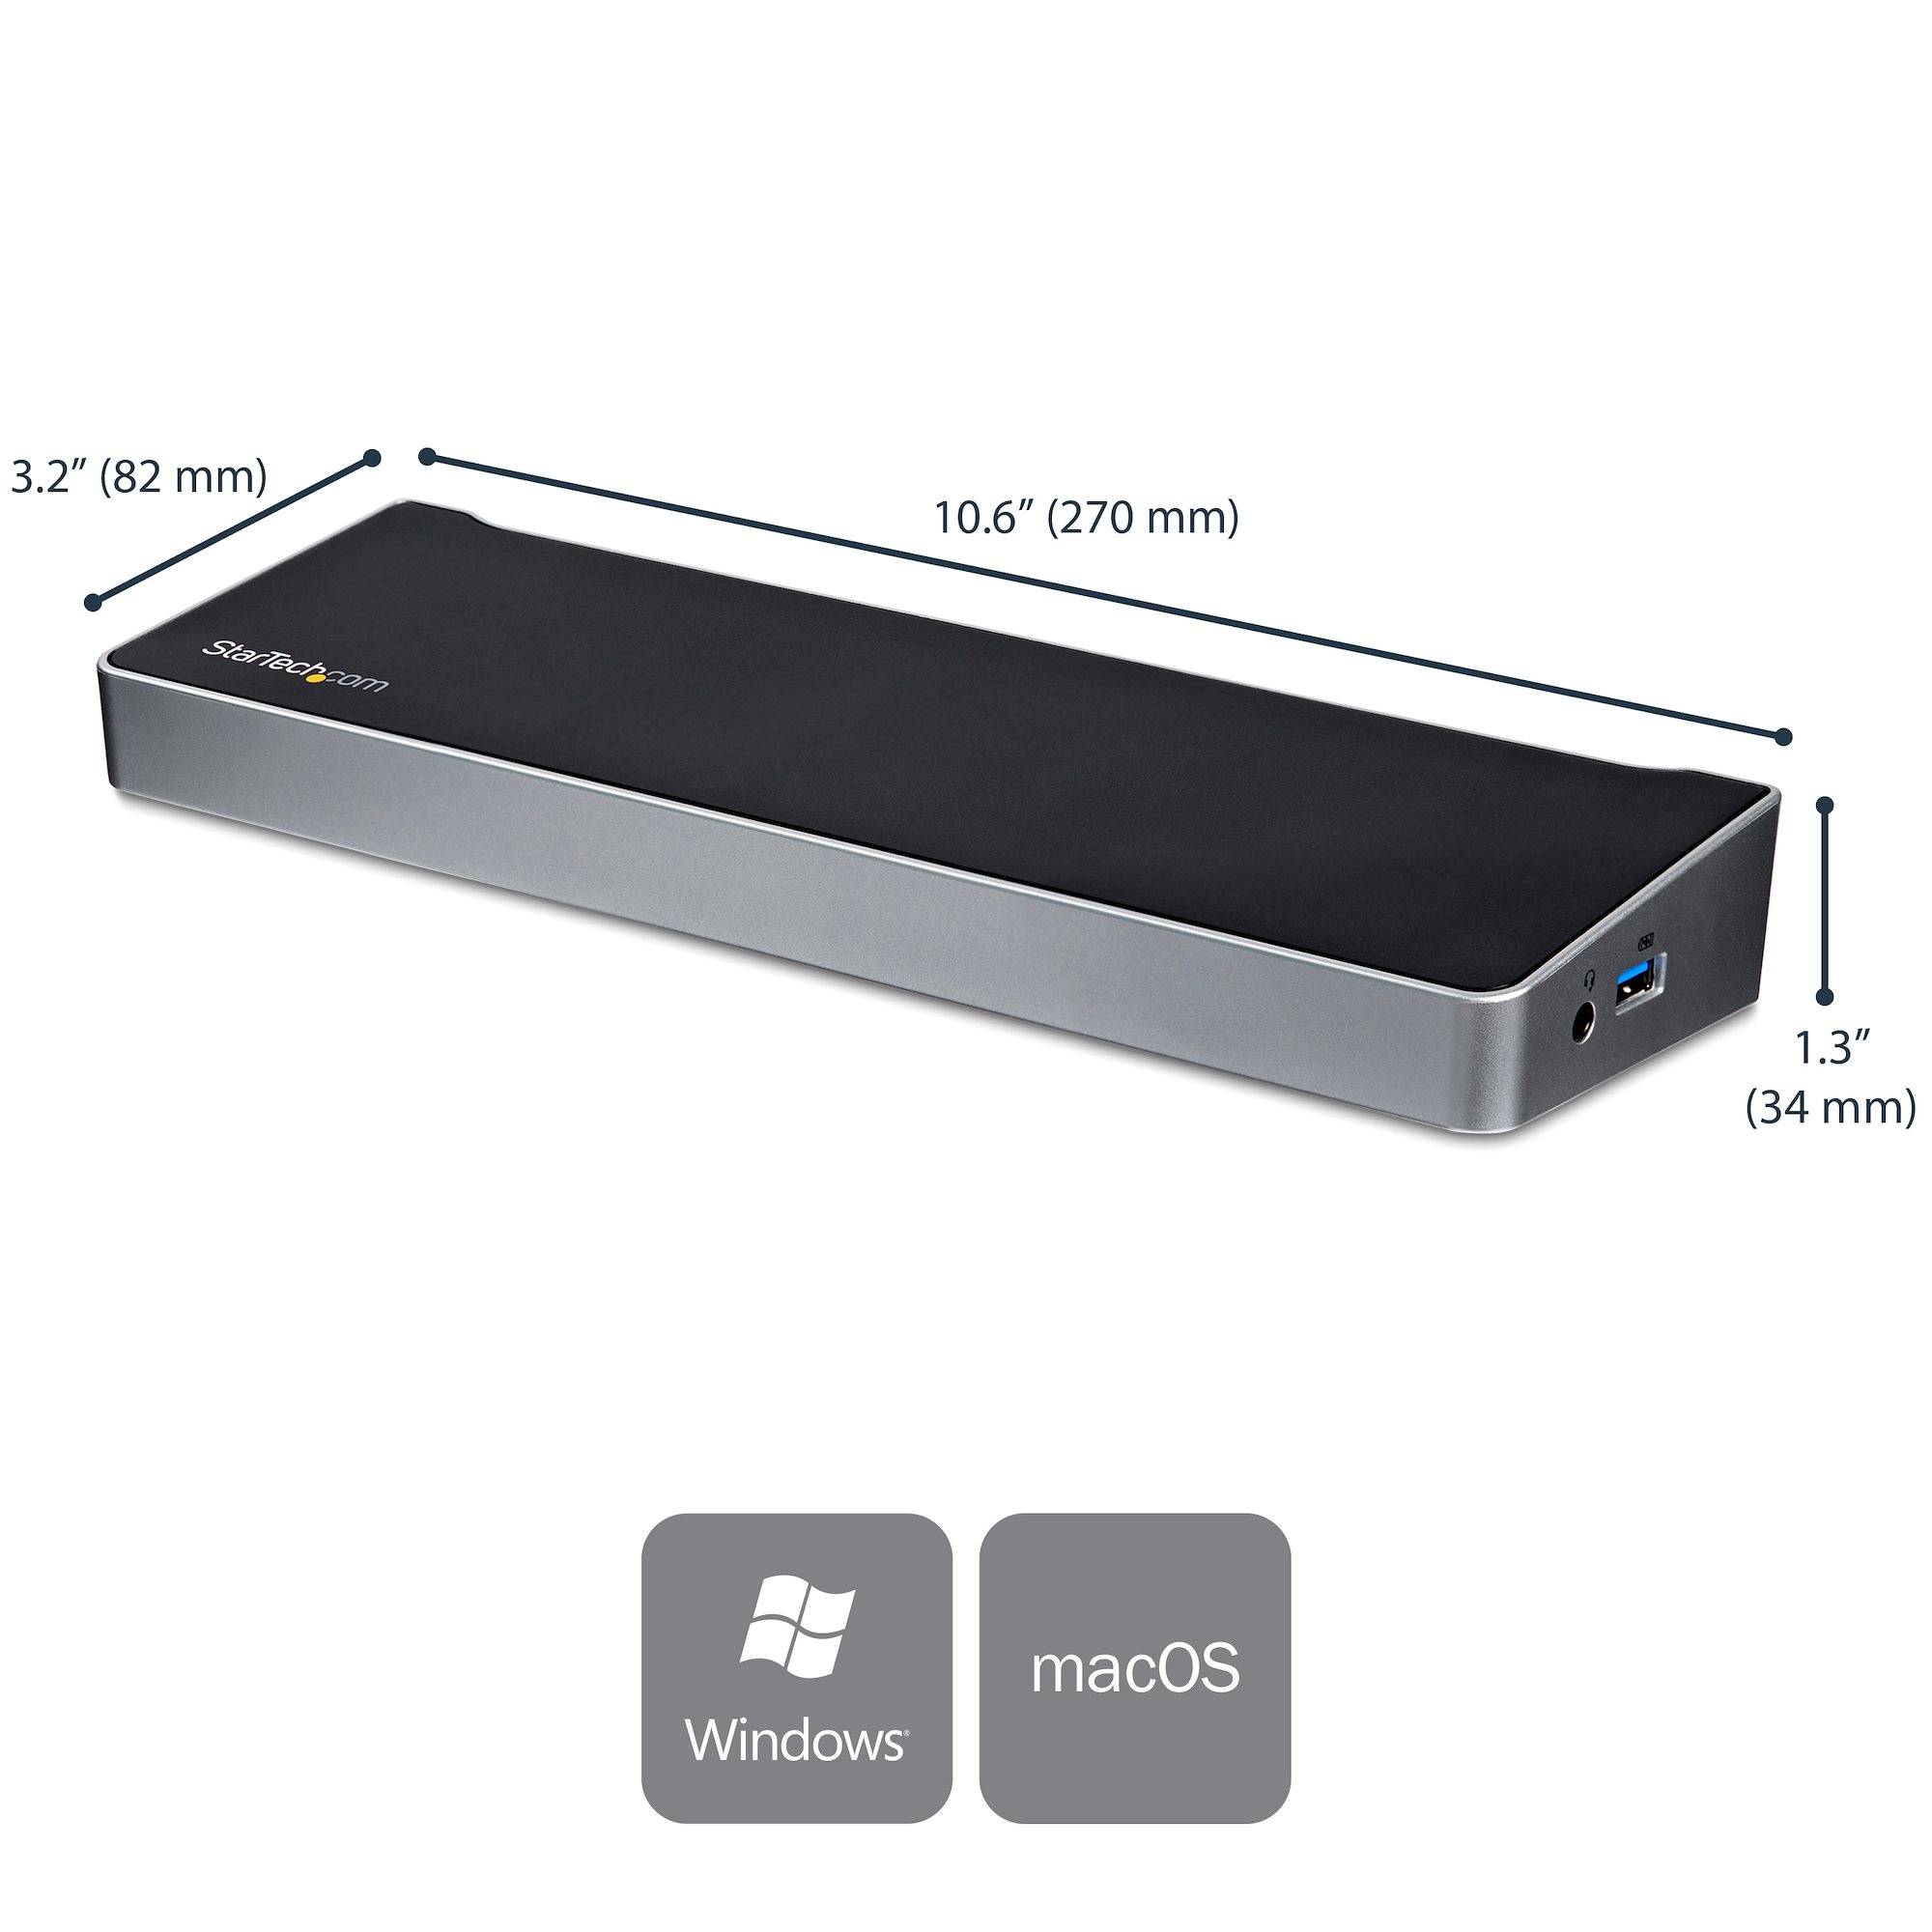 Rca Informatique - image du produit : TRIPLE-4K MONITOR USB-C DOCK WINDOWS/MACBOOK - POWER DELIVERY